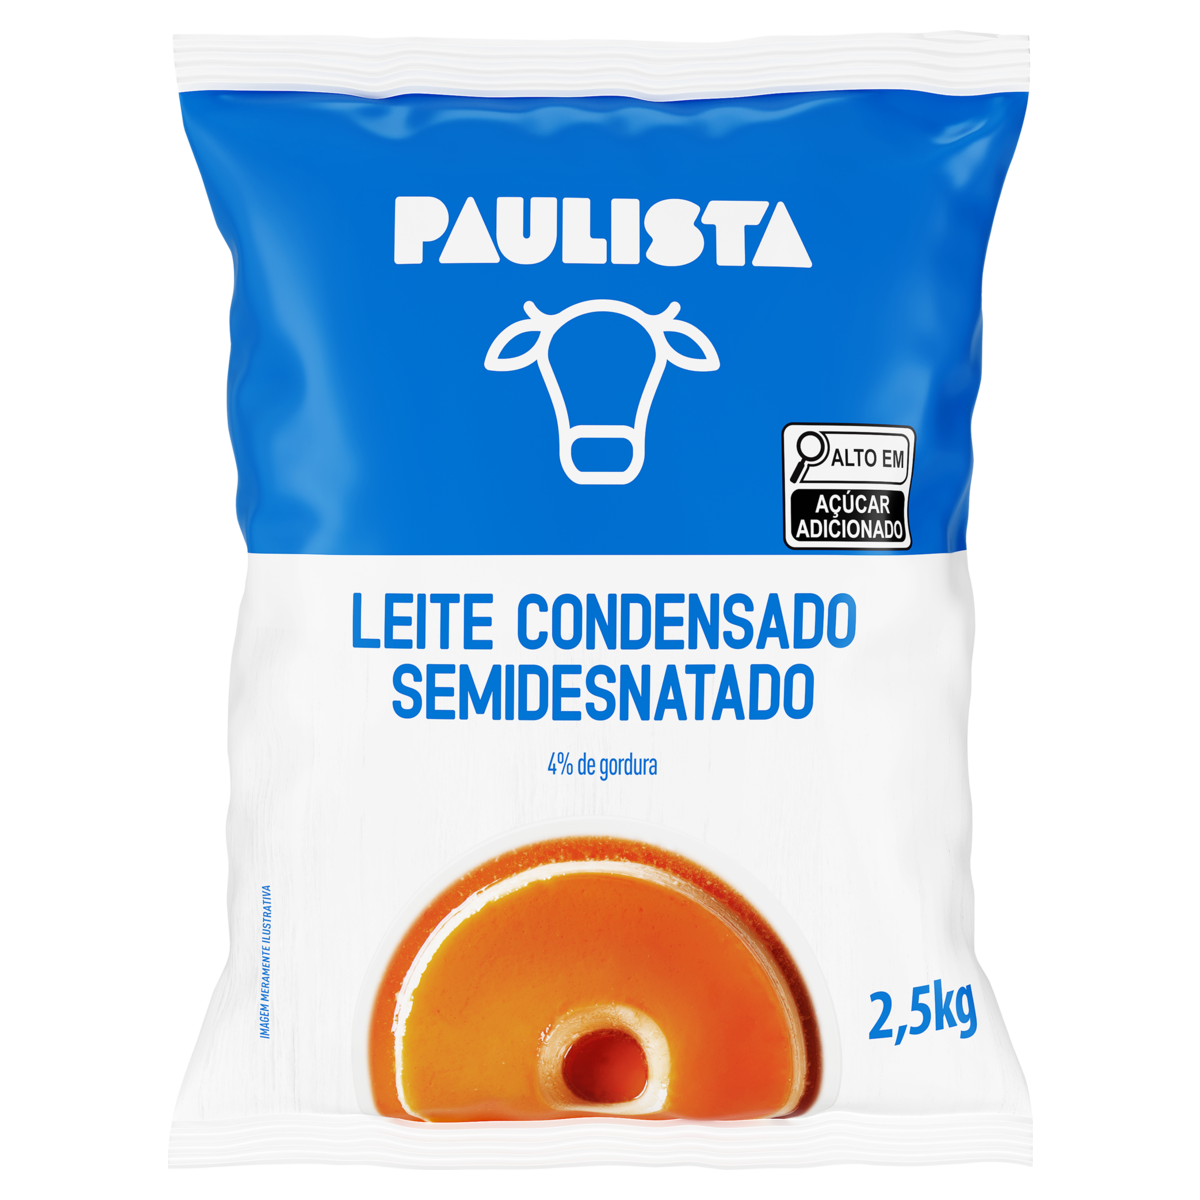 7896294901894 - LEITE CONDENSADO SEMIDESNATADO PAULISTA PACOTE 2,5KG